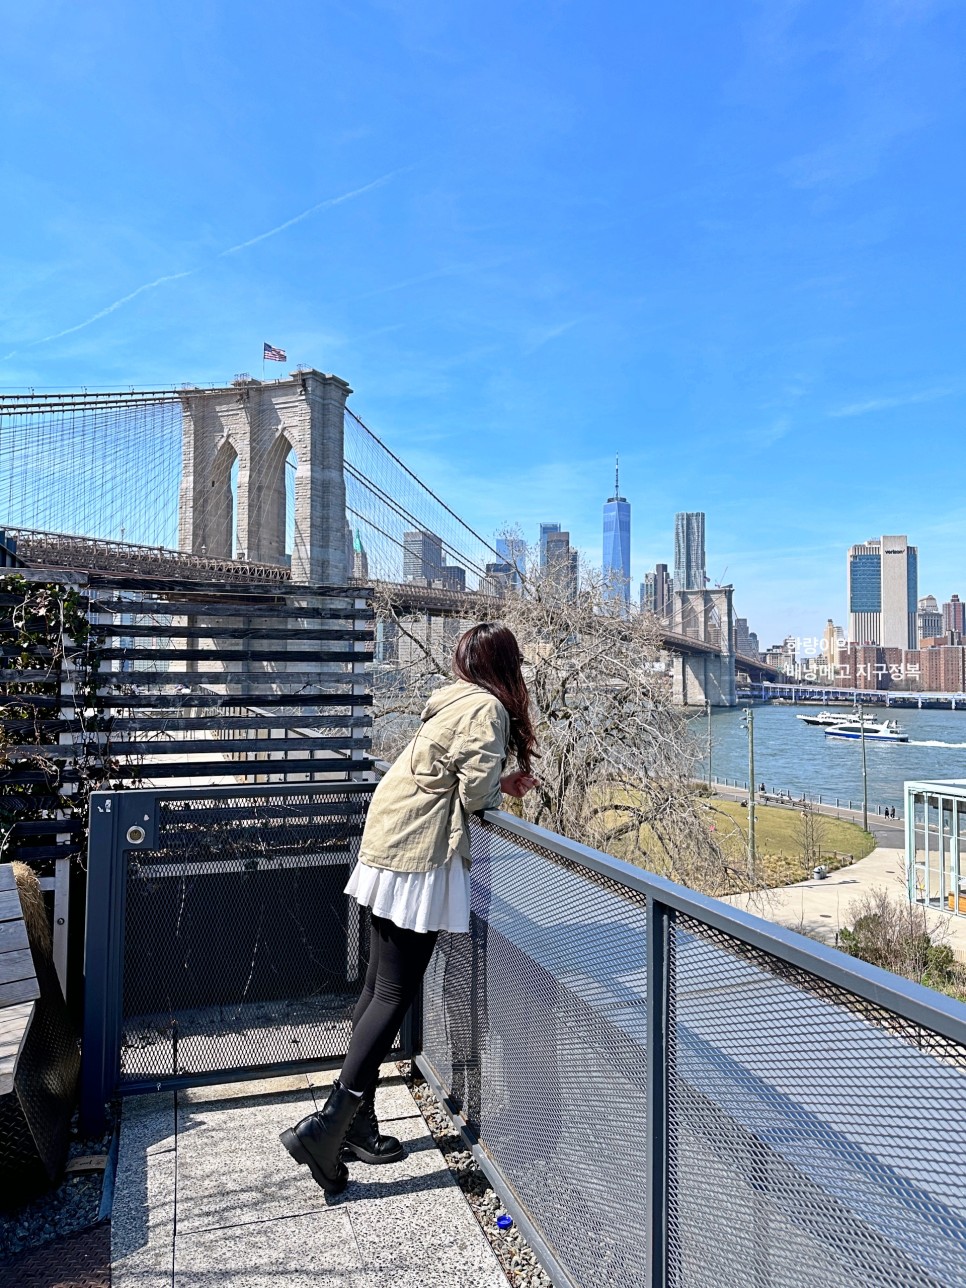 뉴욕 여행 계획 브루클린 브릿지 덤보 야경 스냅 투어 추천